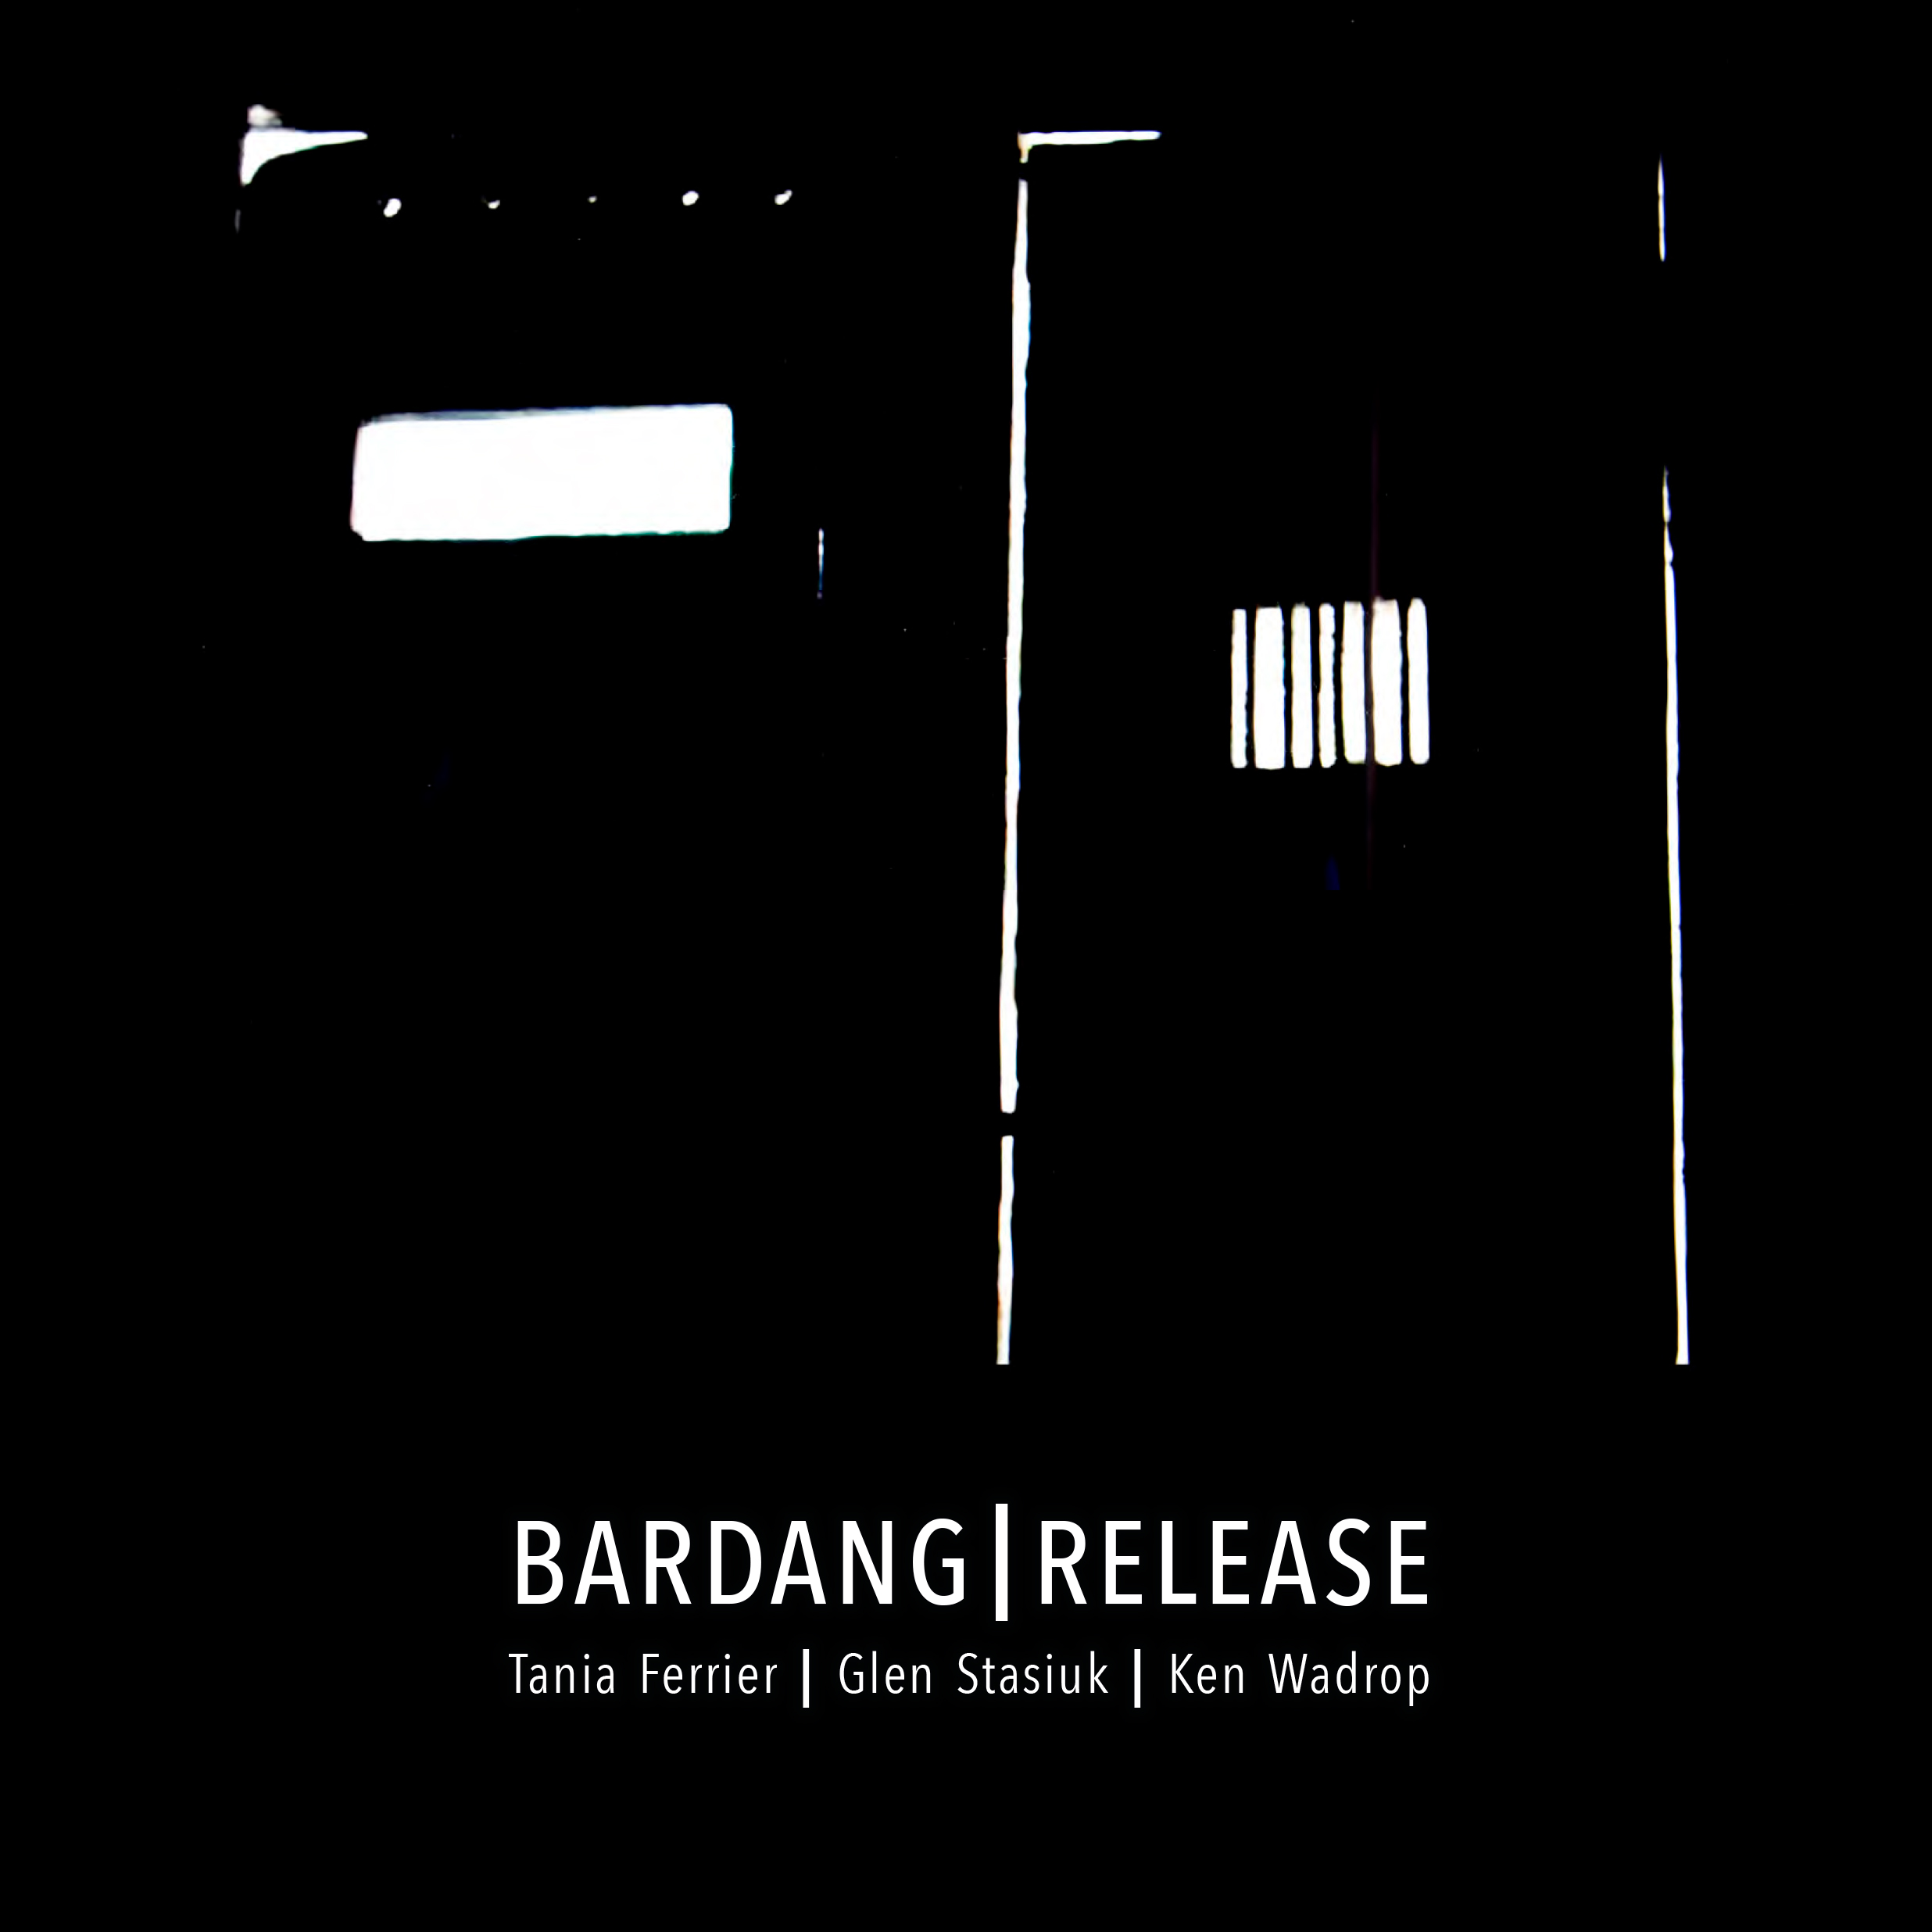 Bardang Release catalogue cover